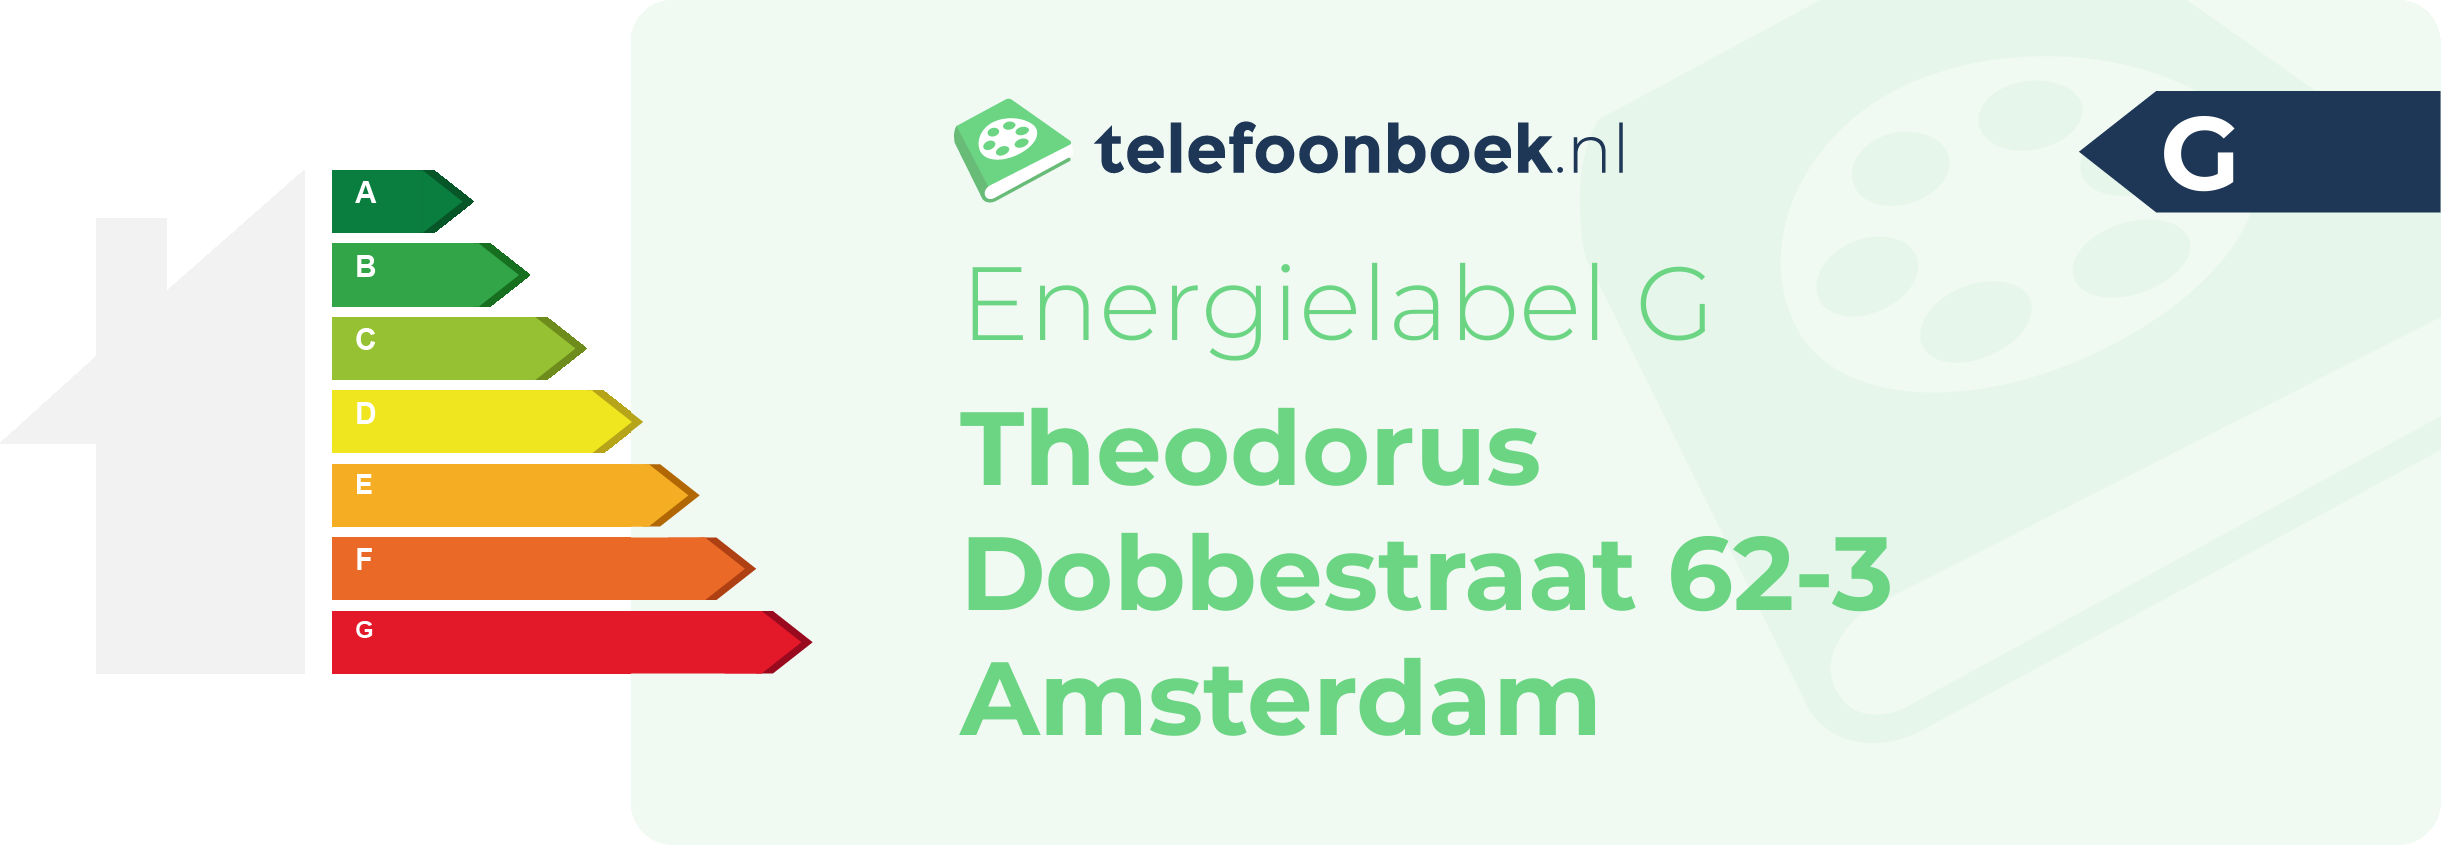 Energielabel Theodorus Dobbestraat 62-3 Amsterdam